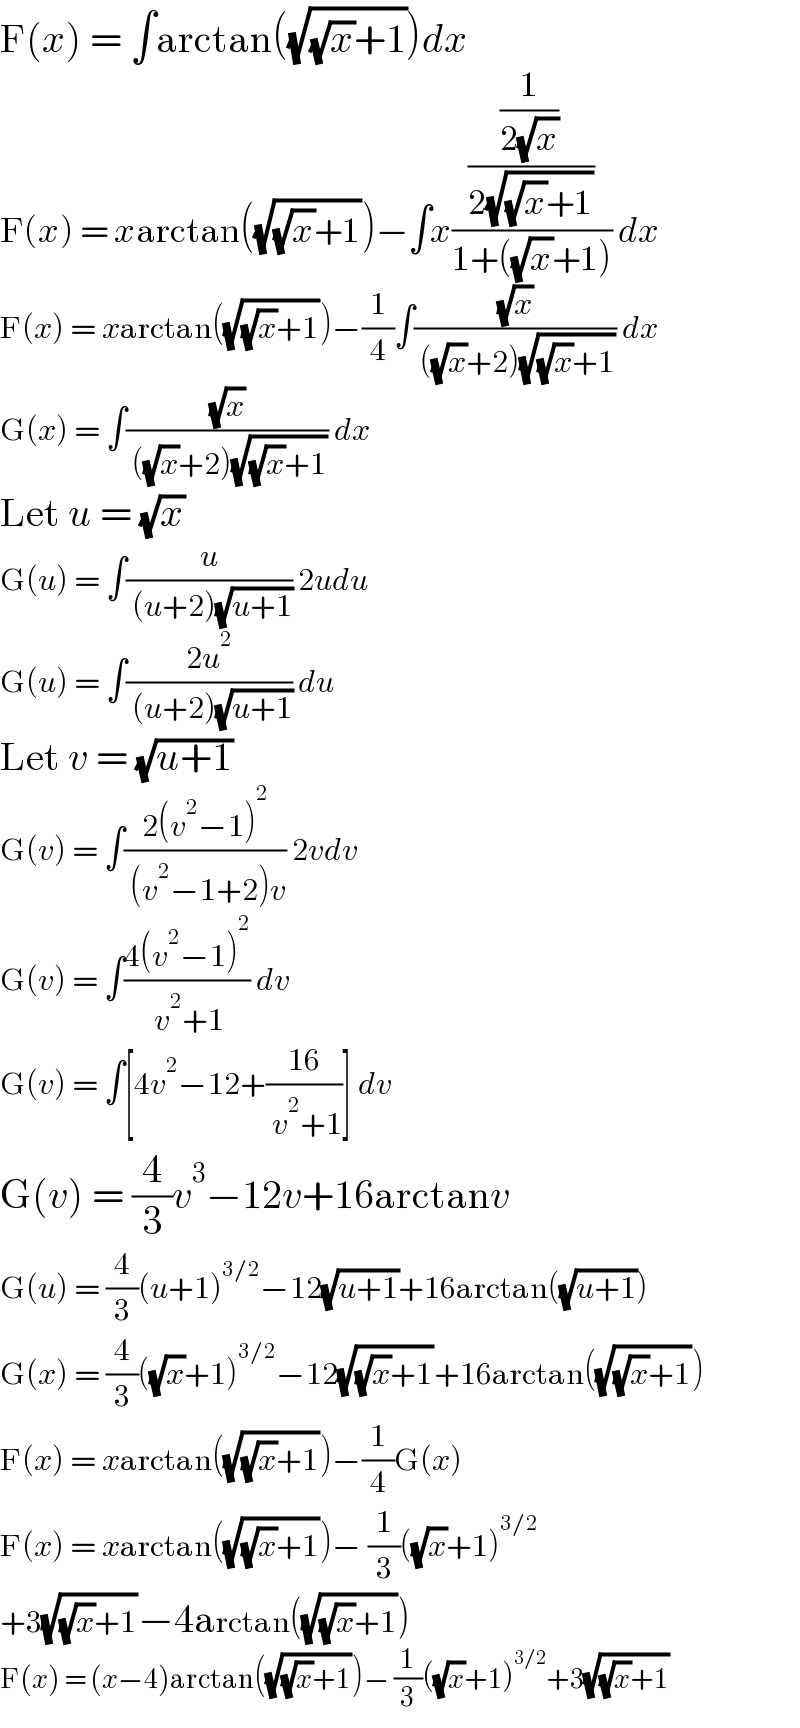 F(x) = ∫arctan((√((√x)+1)))dx  F(x) = xarctan((√((√x)+1)))−∫x(((1/(2(√x)))/(2(√((√x)+1))))/(1+((√x)+1))) dx  F(x) = xarctan((√((√x)+1)))−(1/4)∫((√x)/( ((√x)+2)(√((√x)+1)))) dx  G(x) = ∫((√x)/( ((√x)+2)(√((√x)+1)))) dx  Let u = (√x)  G(u) = ∫(u/( (u+2)(√(u+1)))) 2udu  G(u) = ∫((2u^2 )/( (u+2)(√(u+1)))) du  Let v = (√(u+1))  G(v) = ∫((2(v^2 −1)^2 )/( (v^2 −1+2)v)) 2vdv  G(v) = ∫((4(v^2 −1)^2 )/( v^2 +1)) dv  G(v) = ∫[4v^2 −12+((16)/( v^2 +1))] dv  G(v) = (4/3)v^3 −12v+16arctanv  G(u) = (4/3)(u+1)^(3/2) −12(√(u+1))+16arctan((√(u+1)))  G(x) = (4/3)((√x)+1)^(3/2) −12(√((√x)+1))+16arctan((√((√x)+1)))  F(x) = xarctan((√((√x)+1)))−(1/4)G(x)  F(x) = xarctan((√((√x)+1)))− (1/3)((√x)+1)^(3/2)   +3(√((√x)+1))−4arctan((√((√x)+1)))  F(x) = (x−4)arctan((√((√x)+1)))− (1/3)((√x)+1)^(3/2) +3(√((√x)+1))  